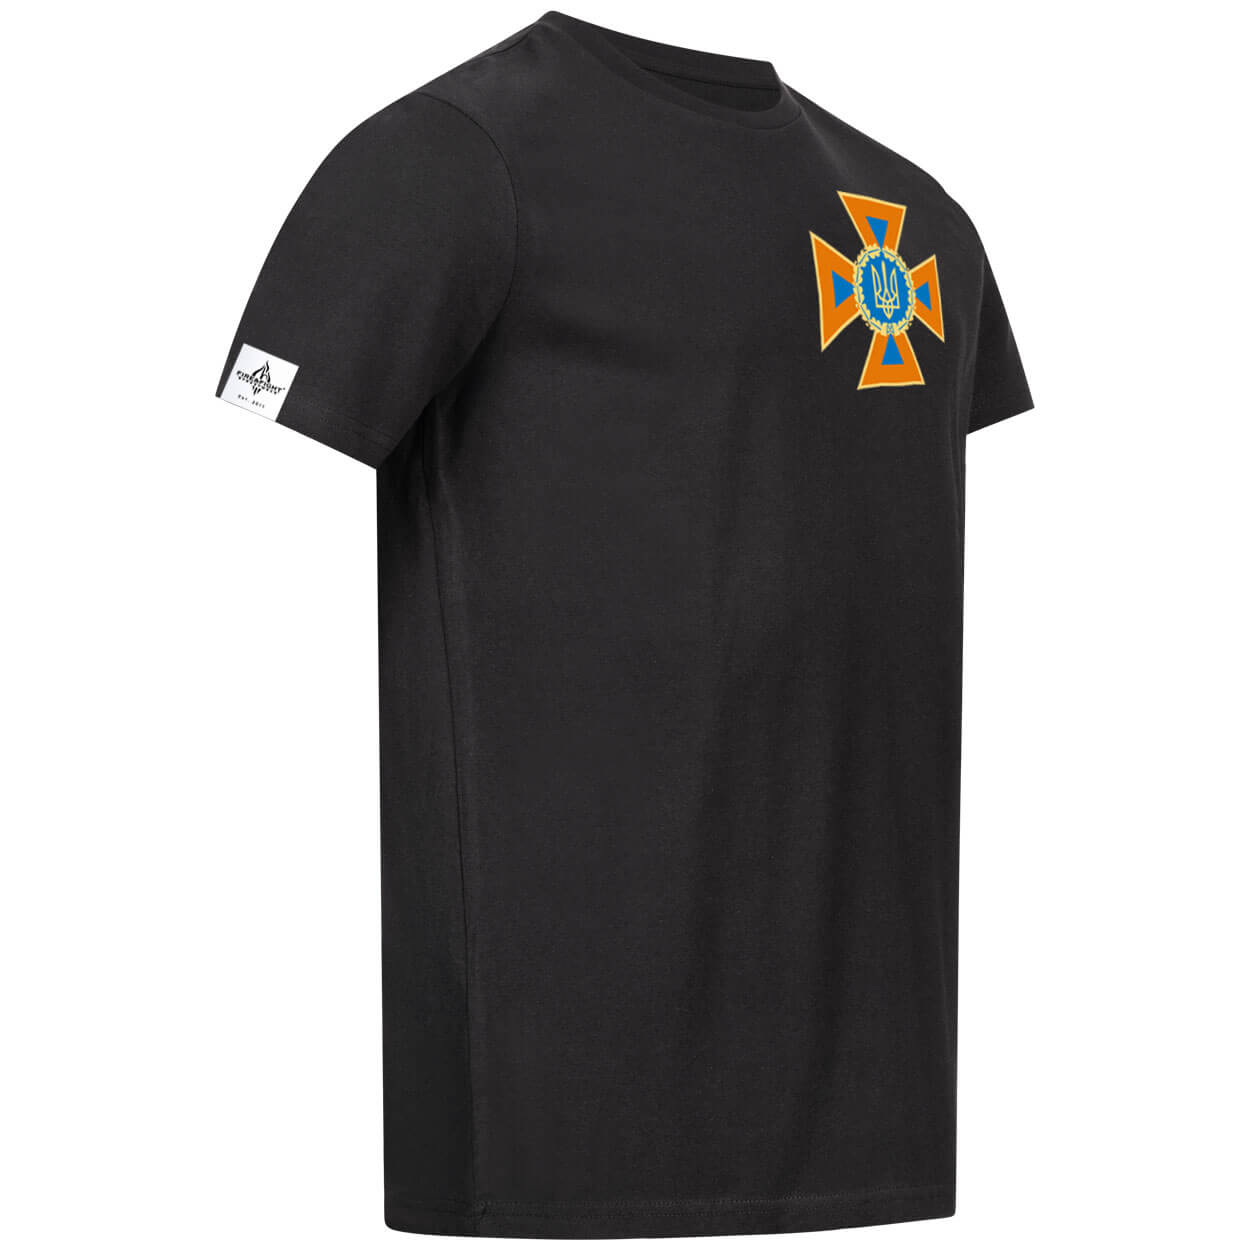 Feuerwehr-wir-stehen-euch-bei-ukraine-t-shirt-schwarz-seitenansicht